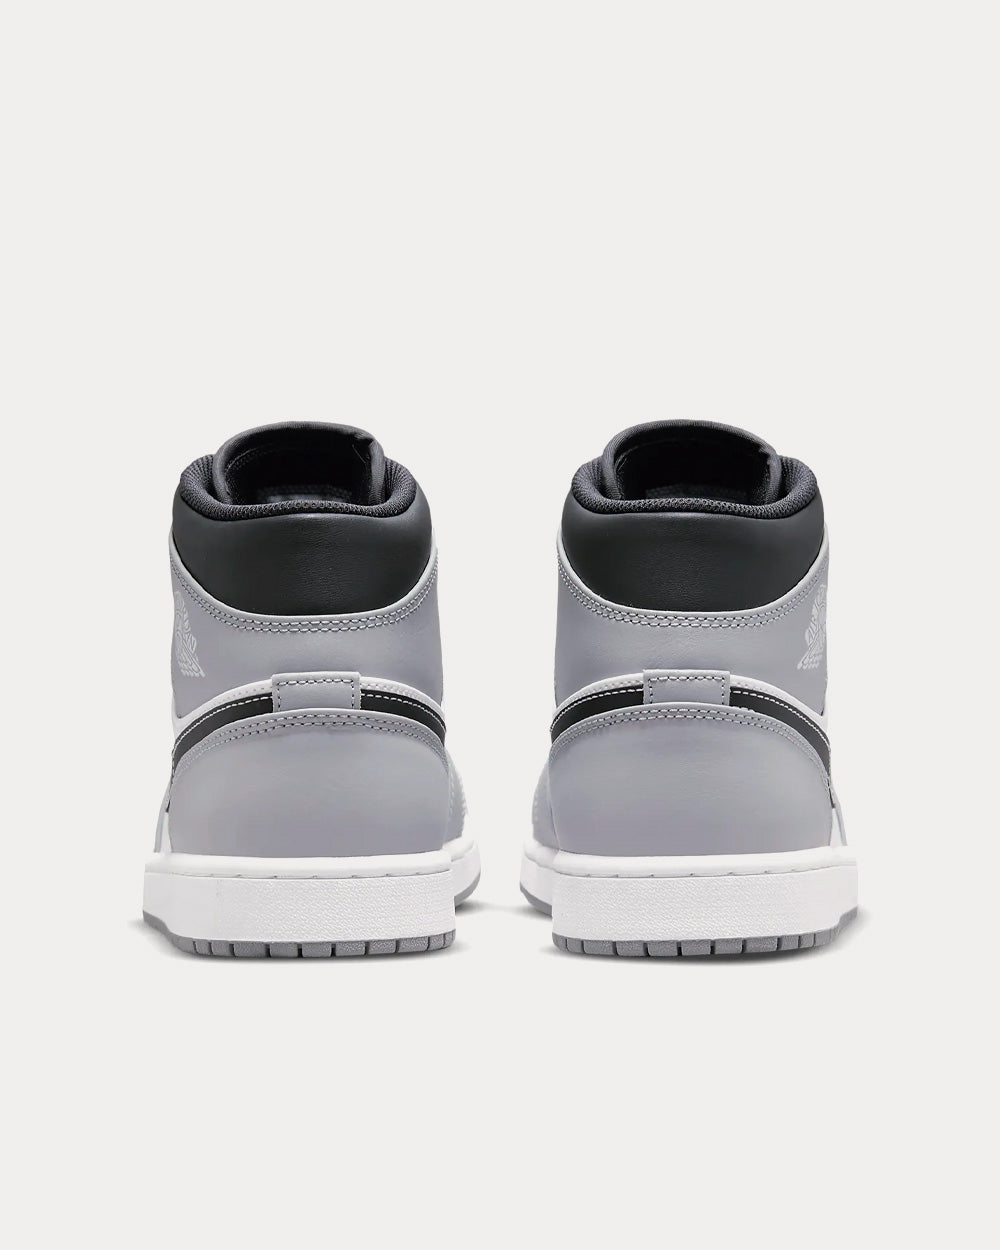 Jordan Air Jordan 1 Light Smoke Grey / Anthracite / White Mid Top Sneakers  - Sneak in Peace